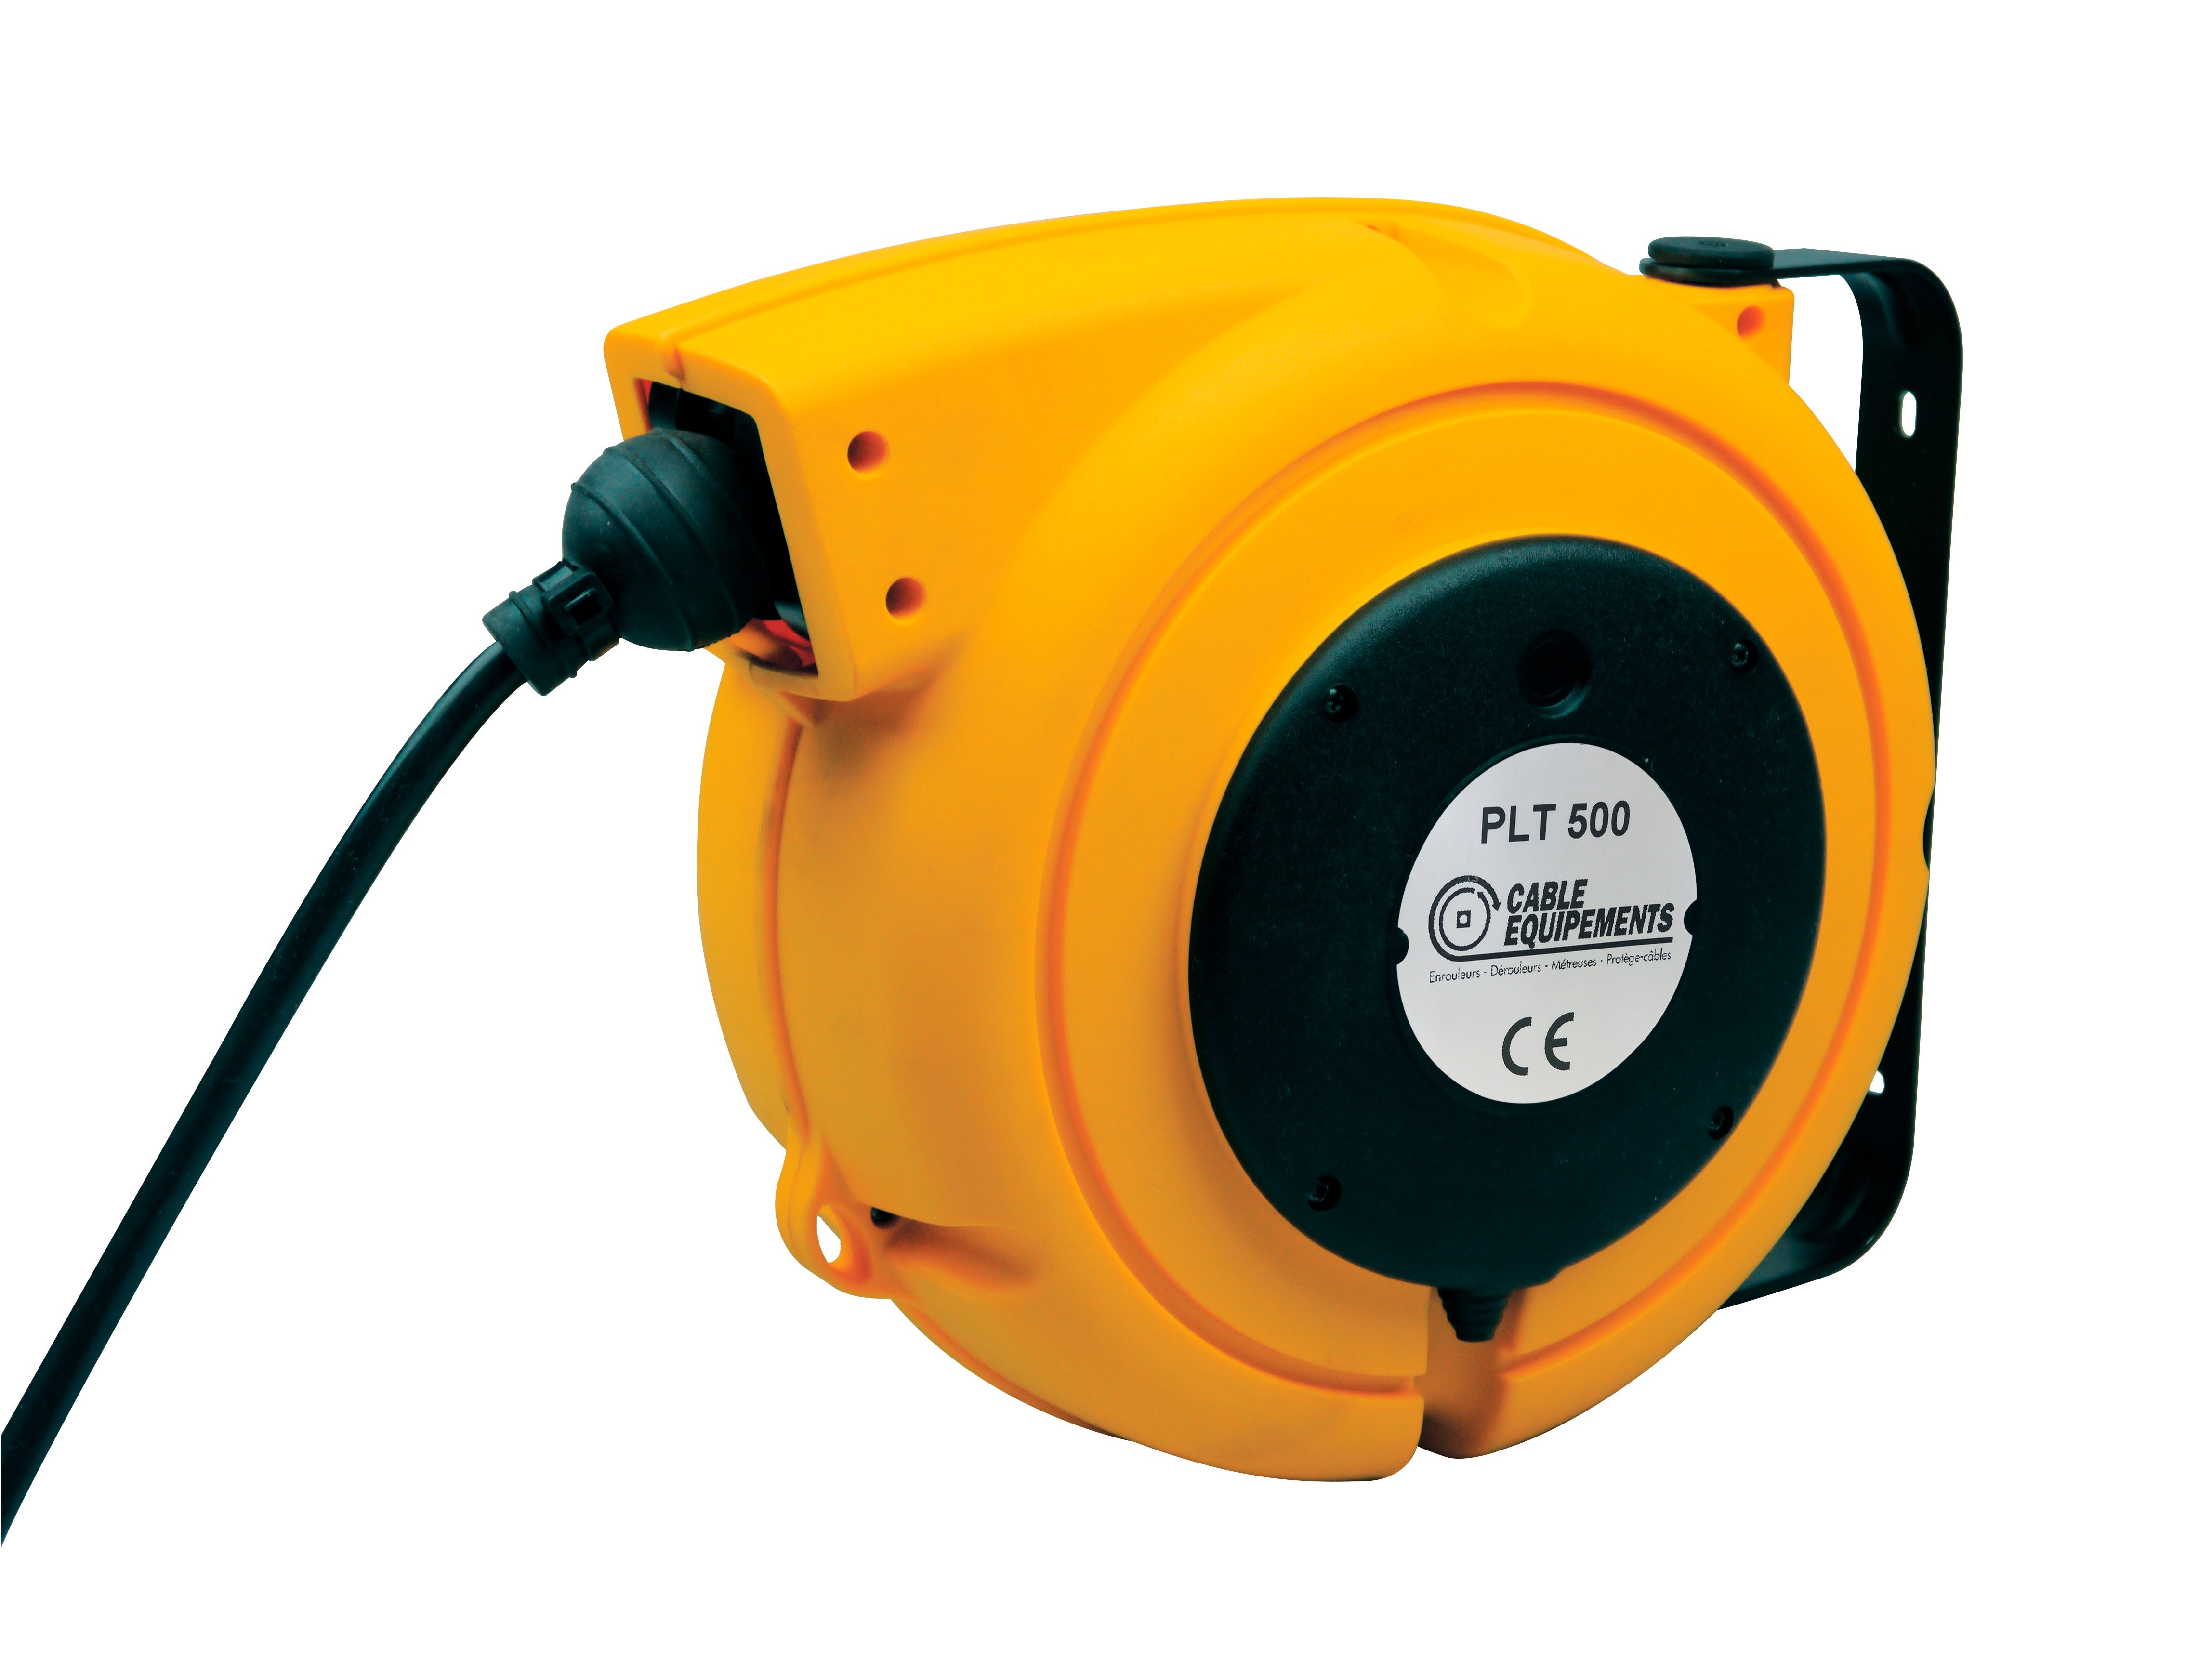 Cable Equipements - P503 : enrouleur rappel automatique PLT 500 - 12+1m 2x1² HO7RN-F - IP42 -